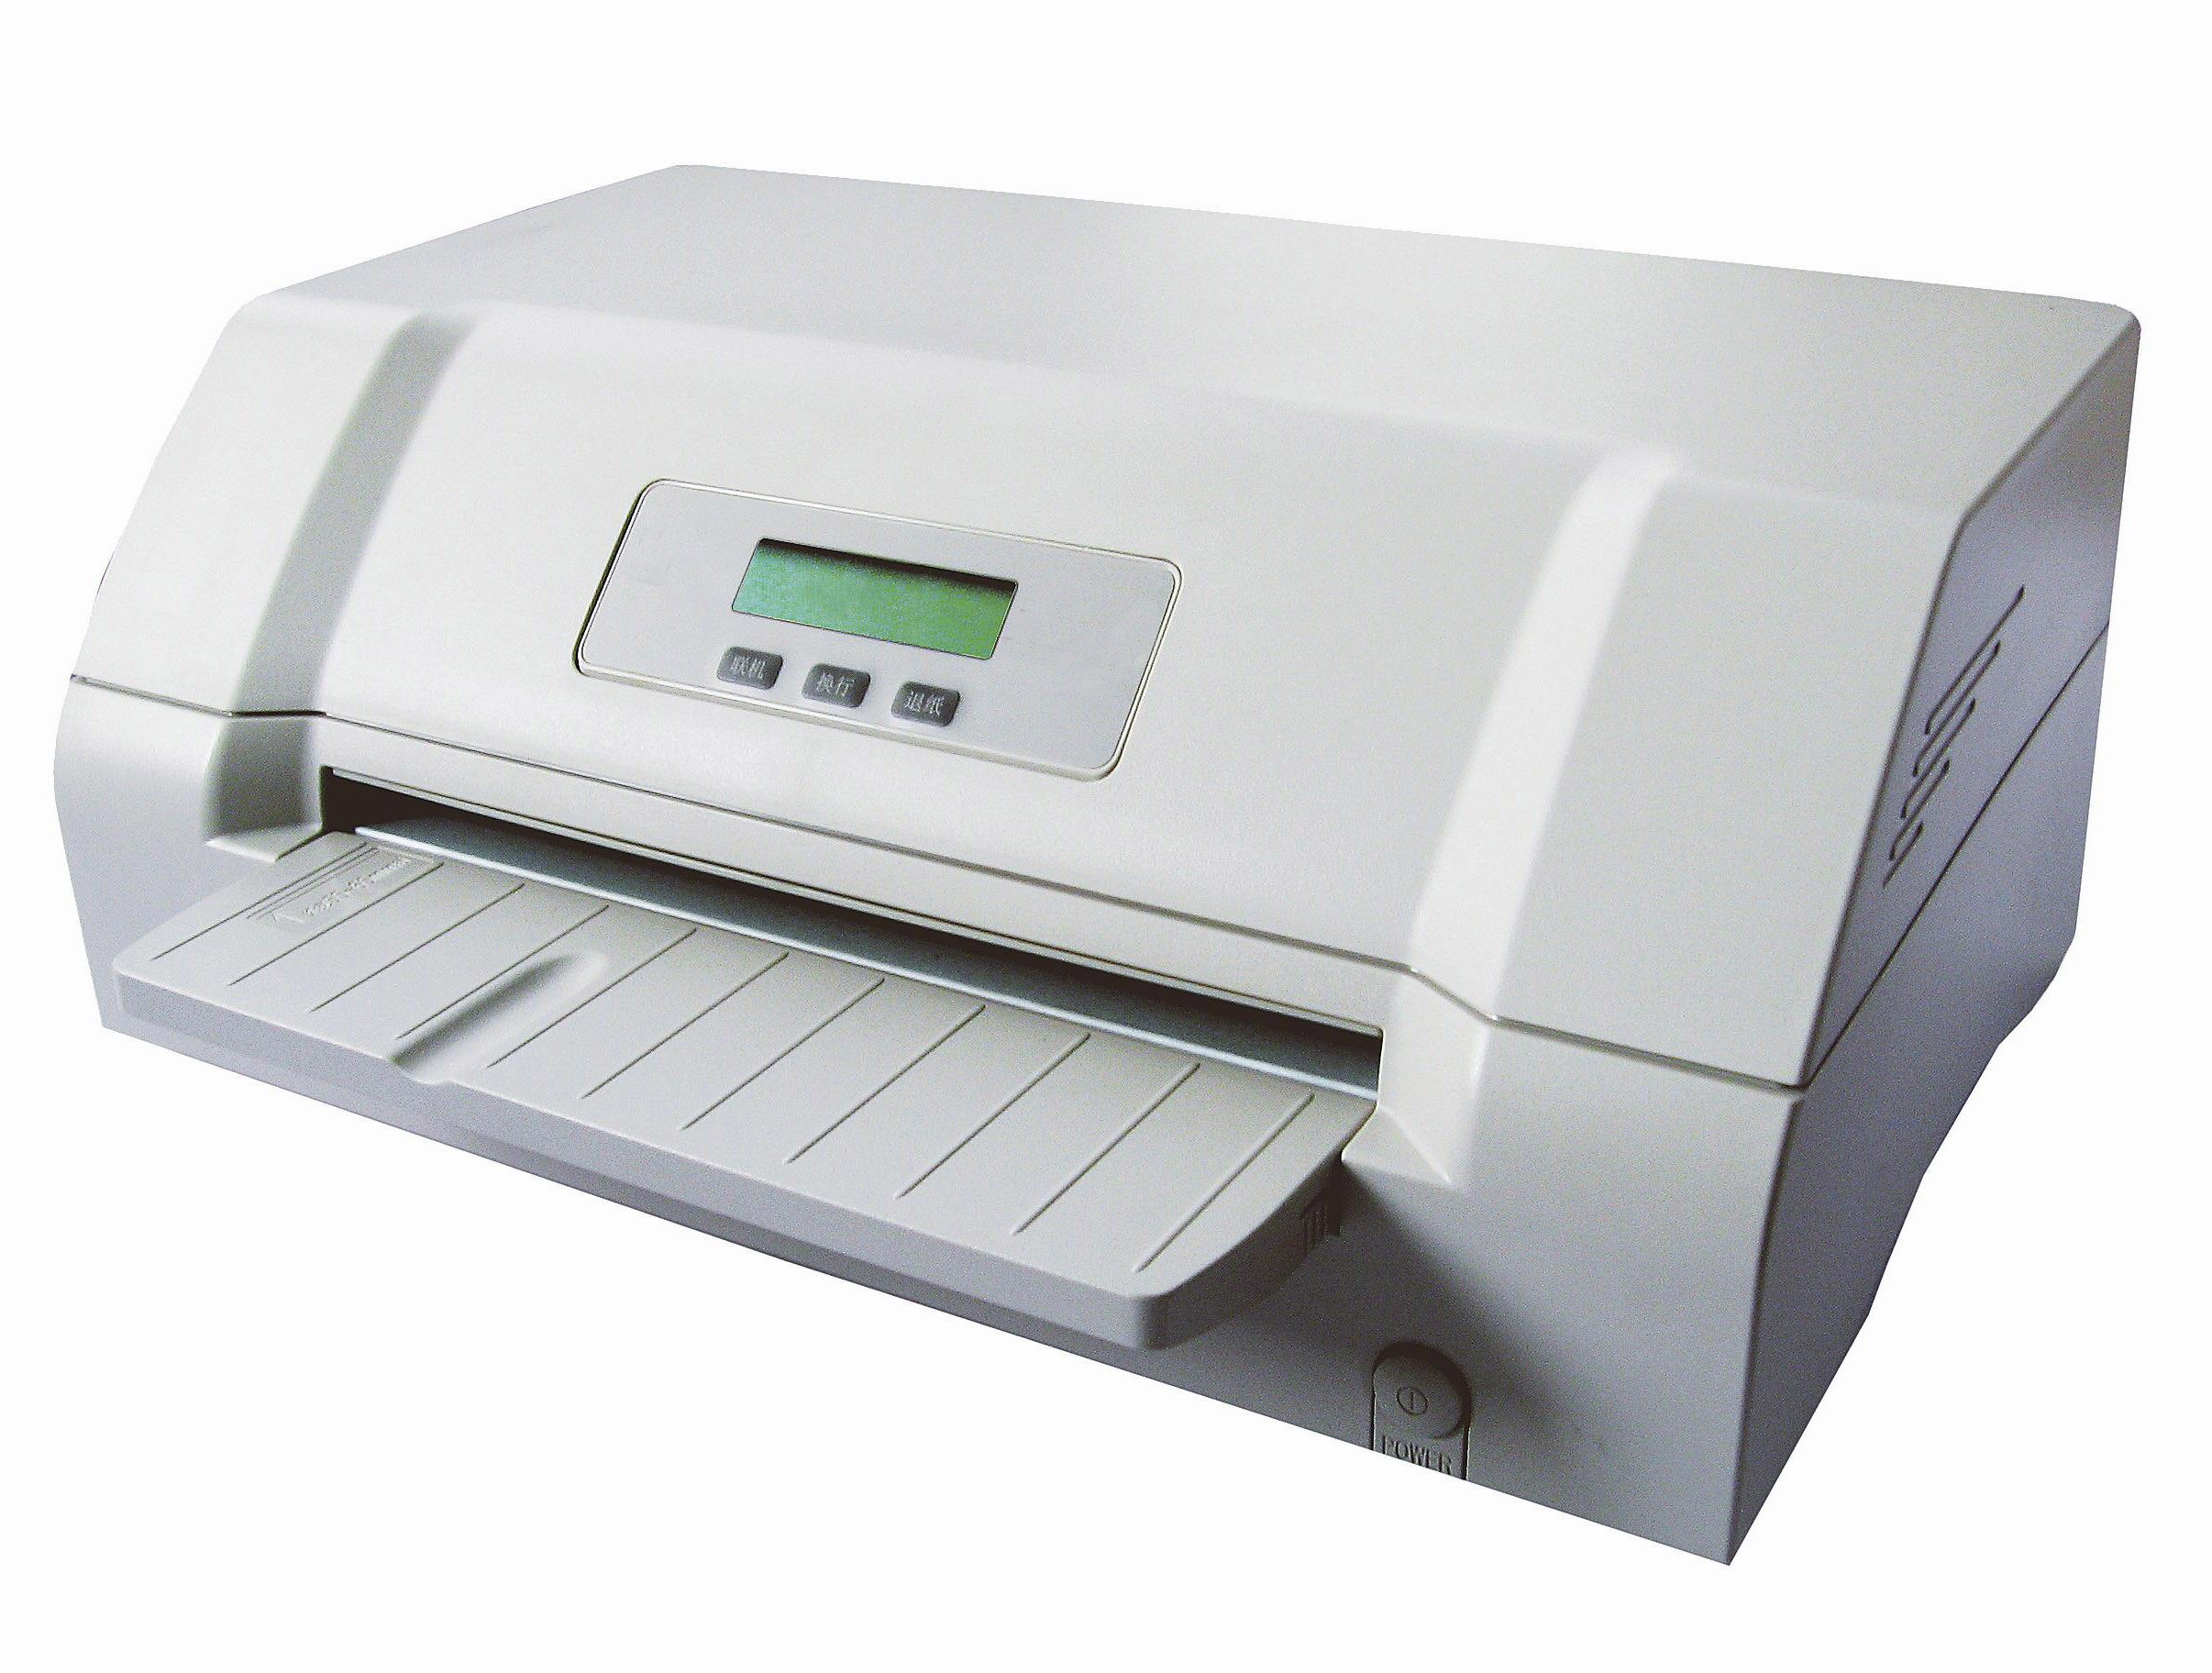 富士通 证卡针式打印机DPK200I